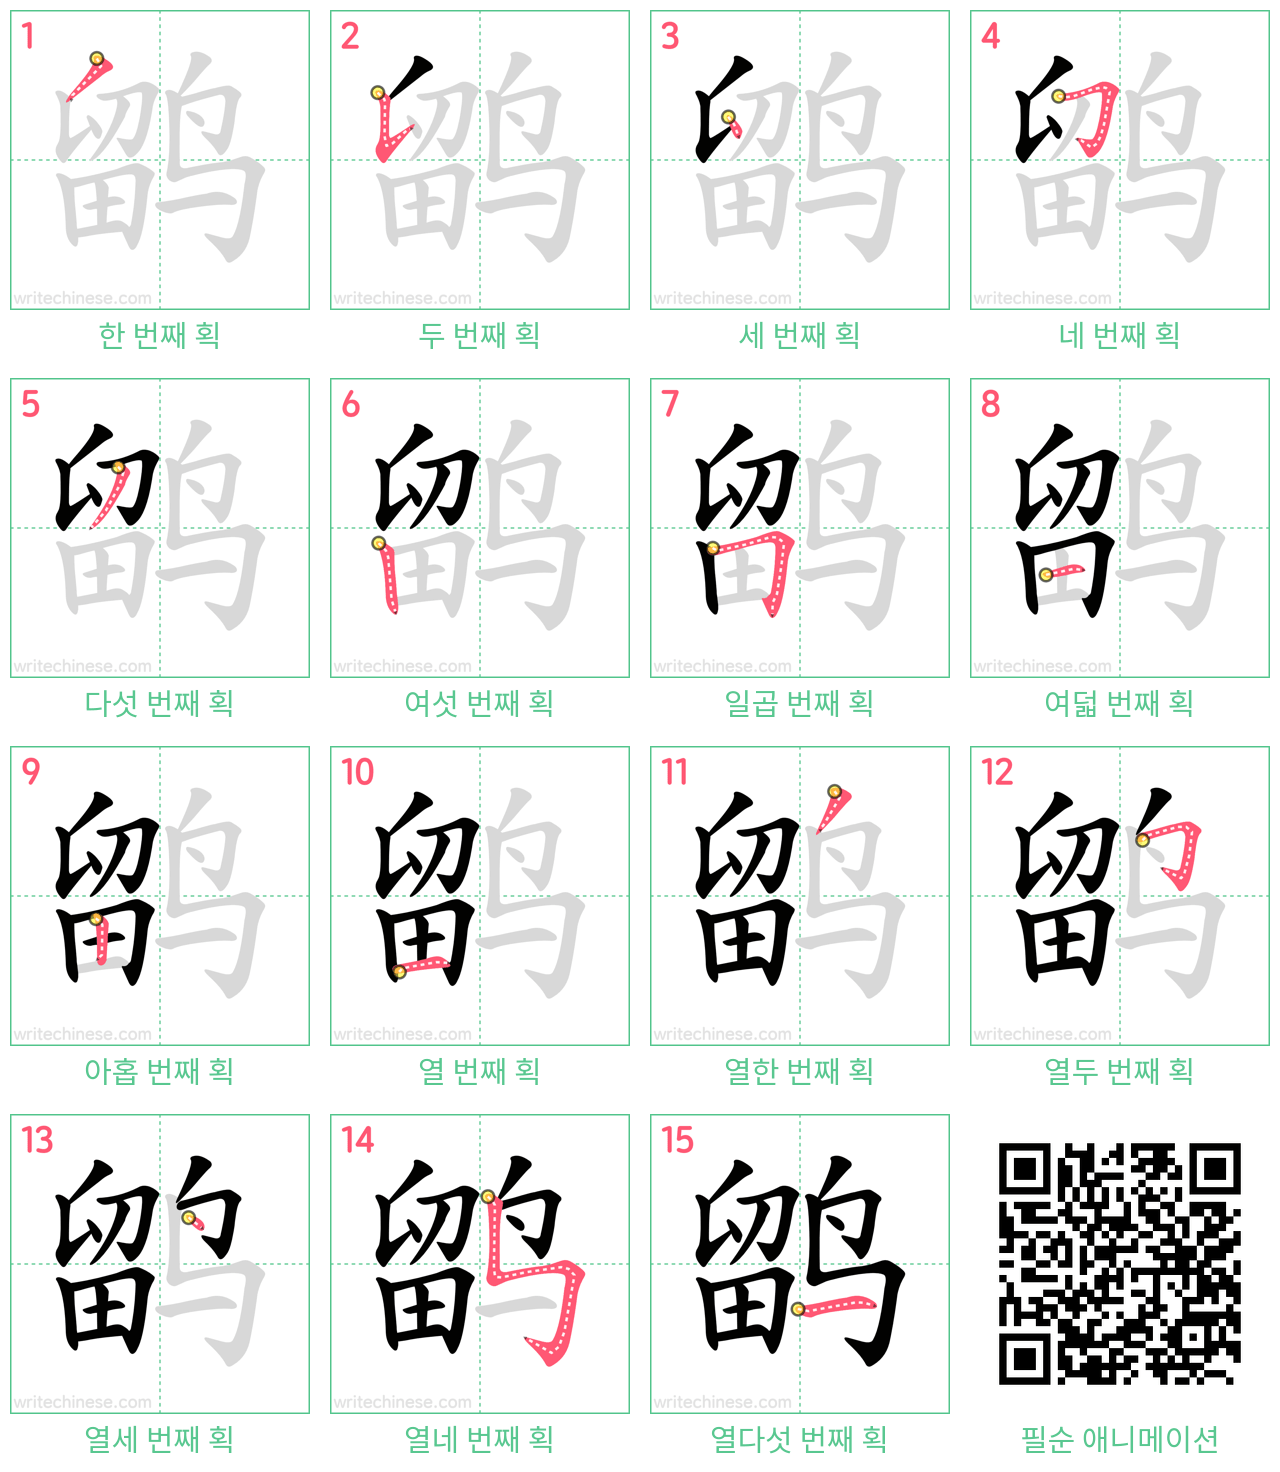 鹠 step-by-step stroke order diagrams